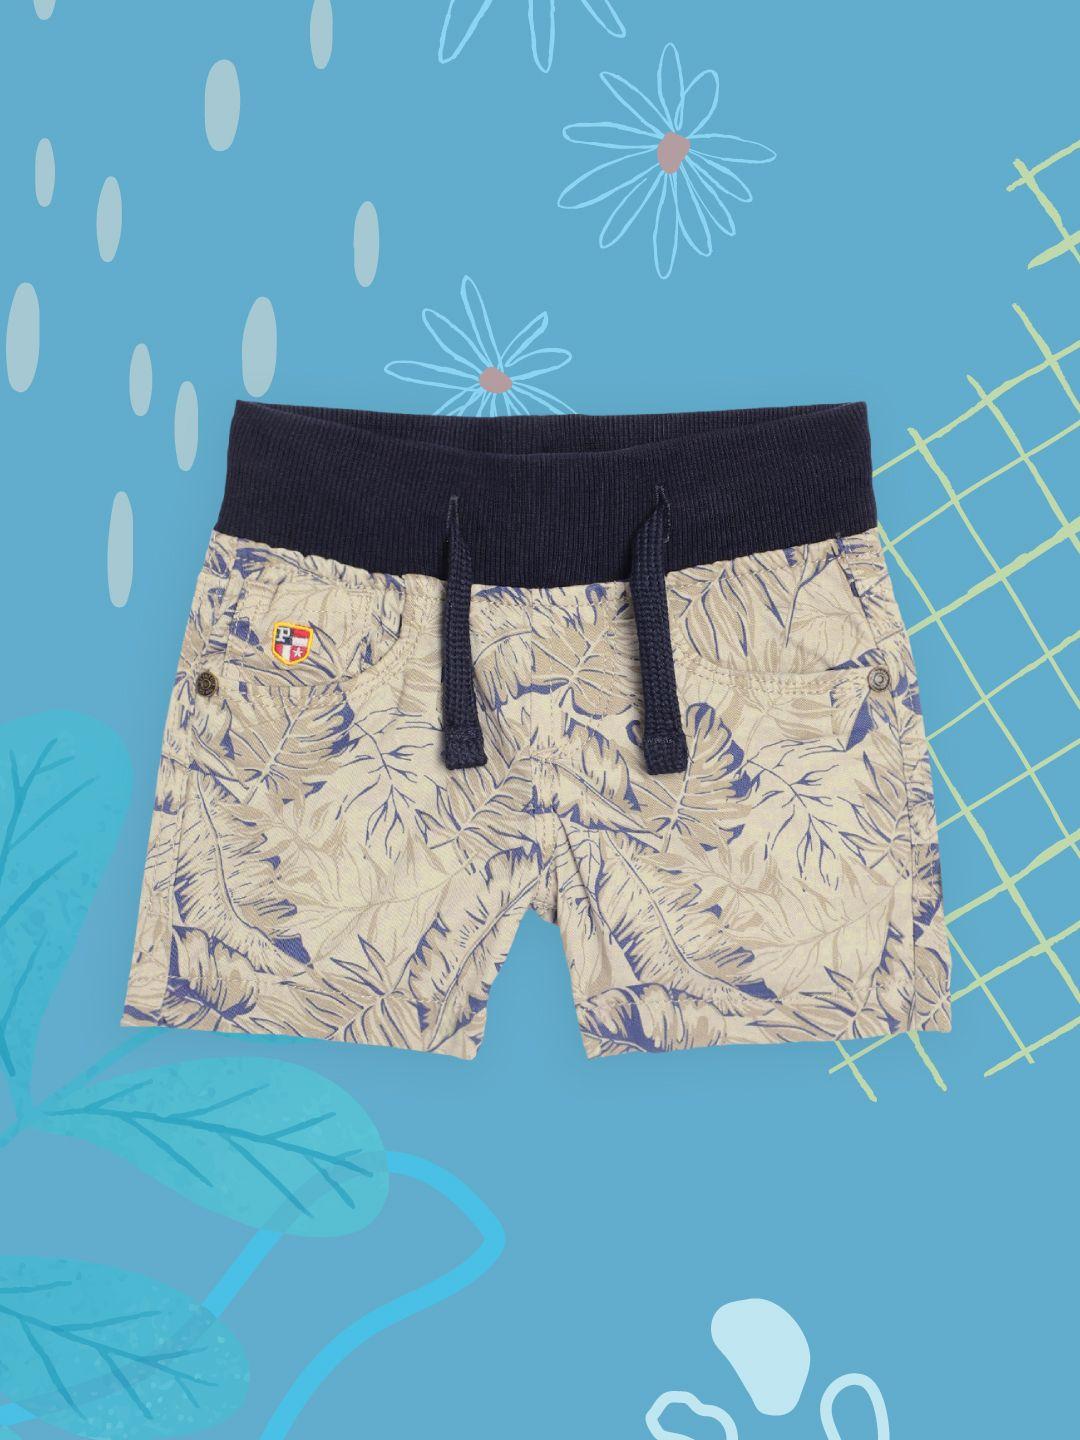 u.s. polo assn. kids boys beige & navy blue tropical print regular fit shorts